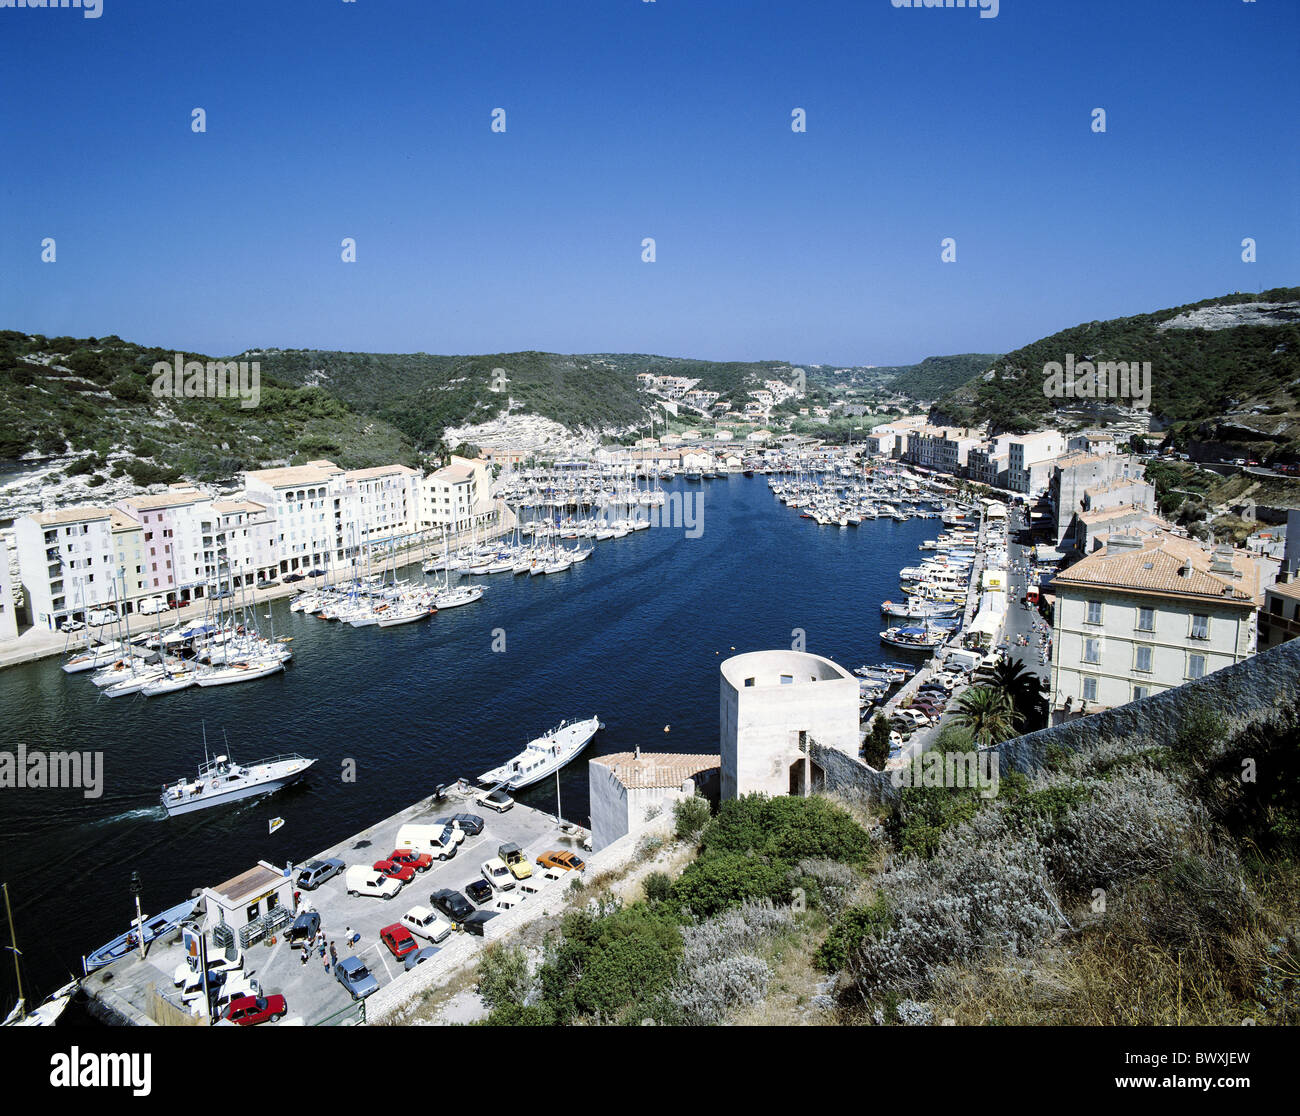 Francia Bonifacio Corsica porto acqua panoramica yachts barche case case Foto Stock